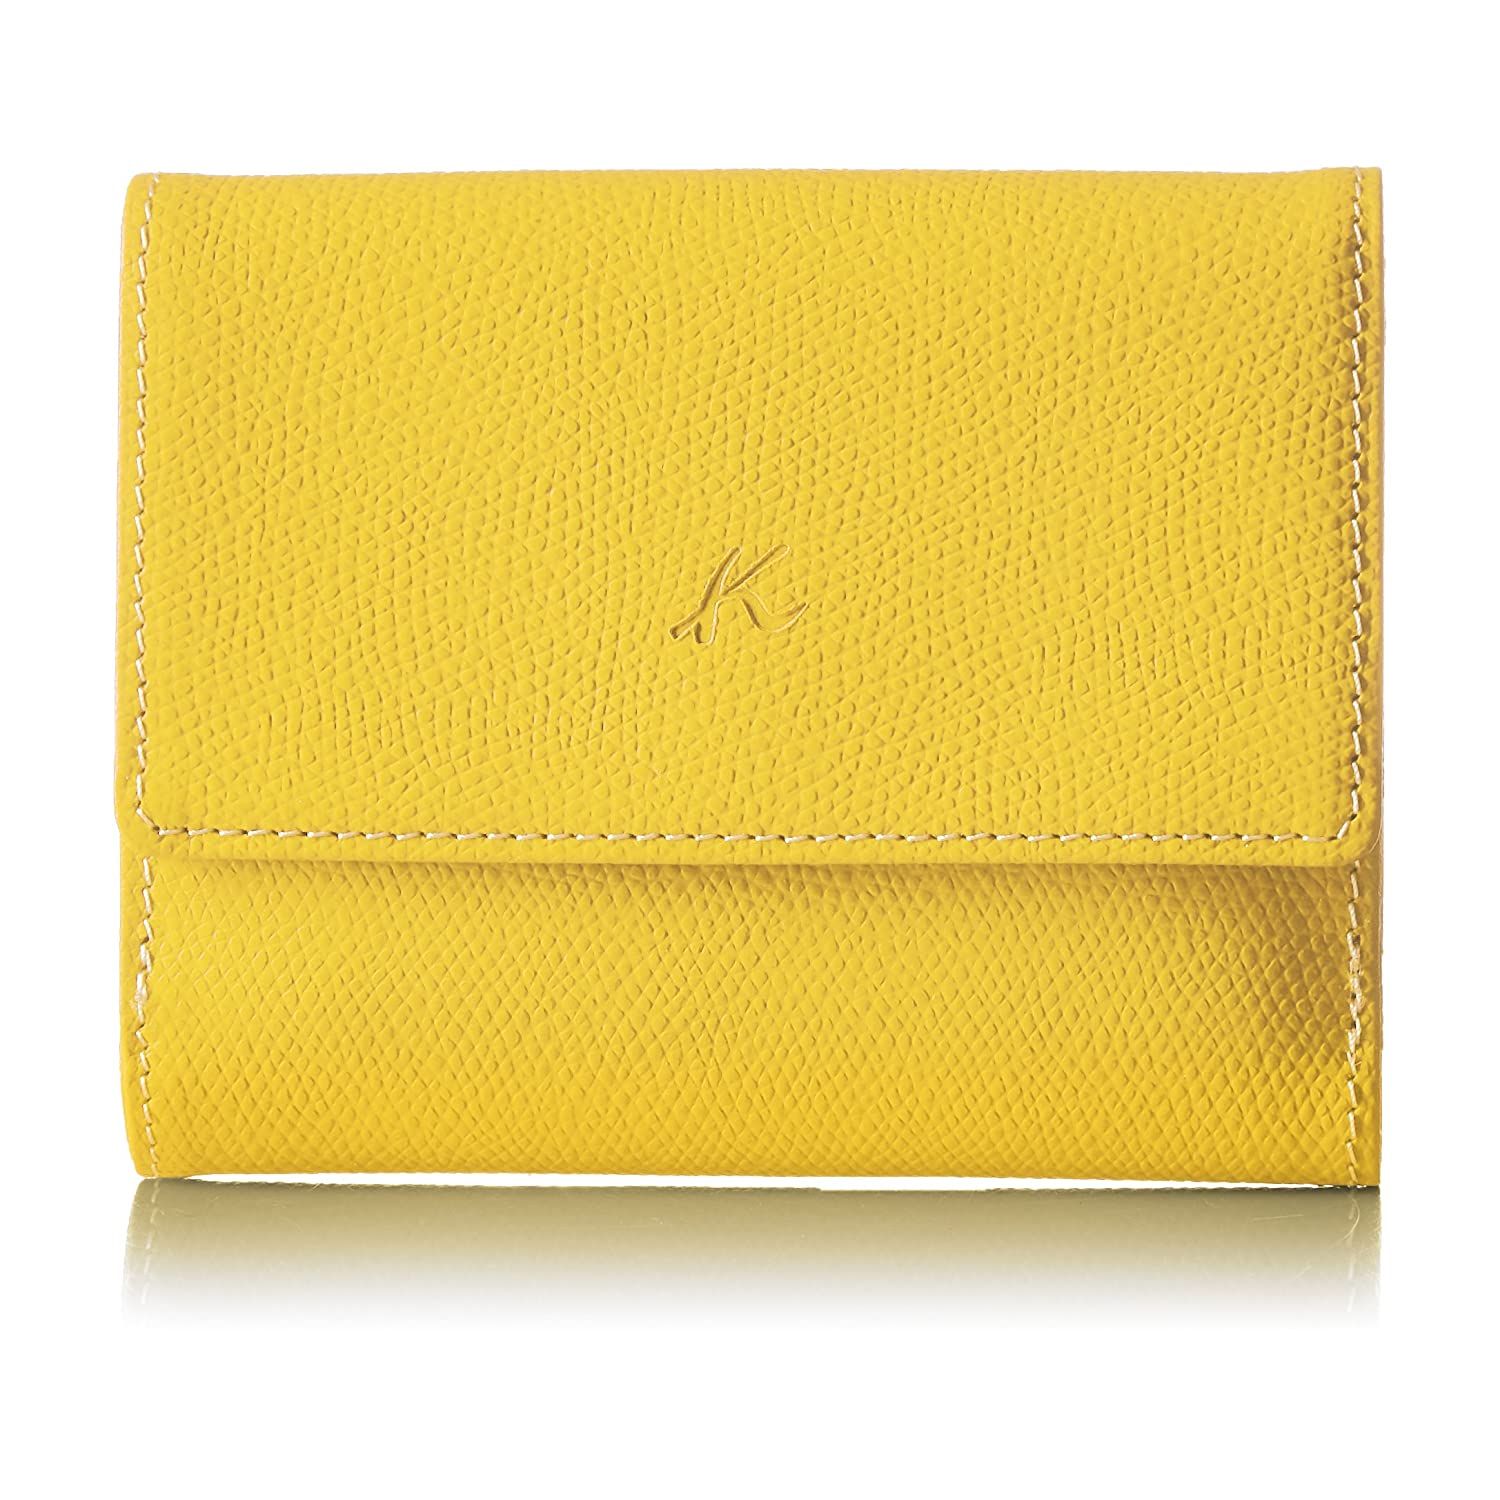 質のいい革製品がずらり「Kitamura（キタムラ）の財布」おすすめ6選